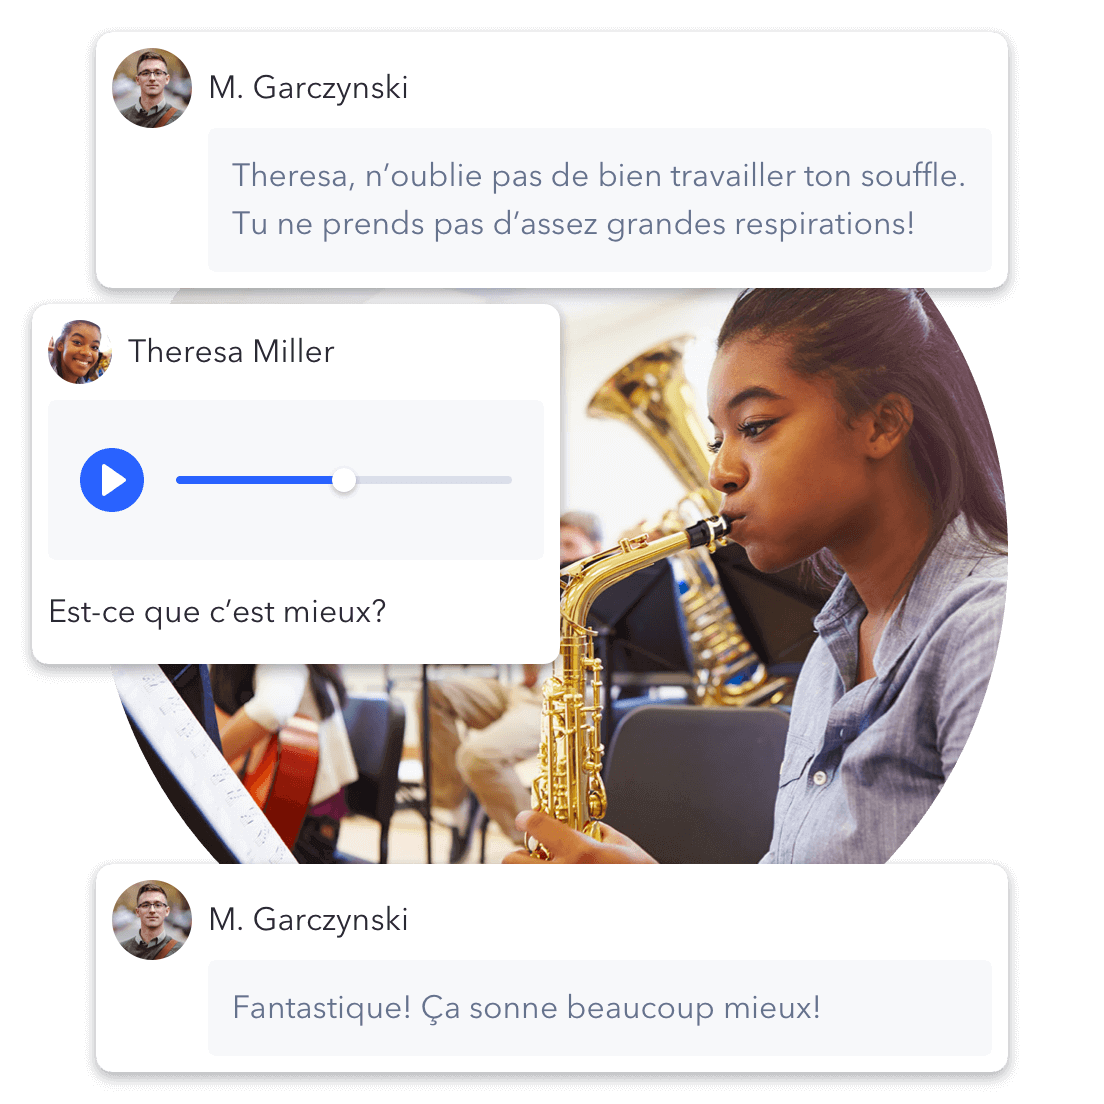 Une élève répond au commentaire constructif de son enseignant en ajoutant un fichier audio de son entrainement de saxophone.